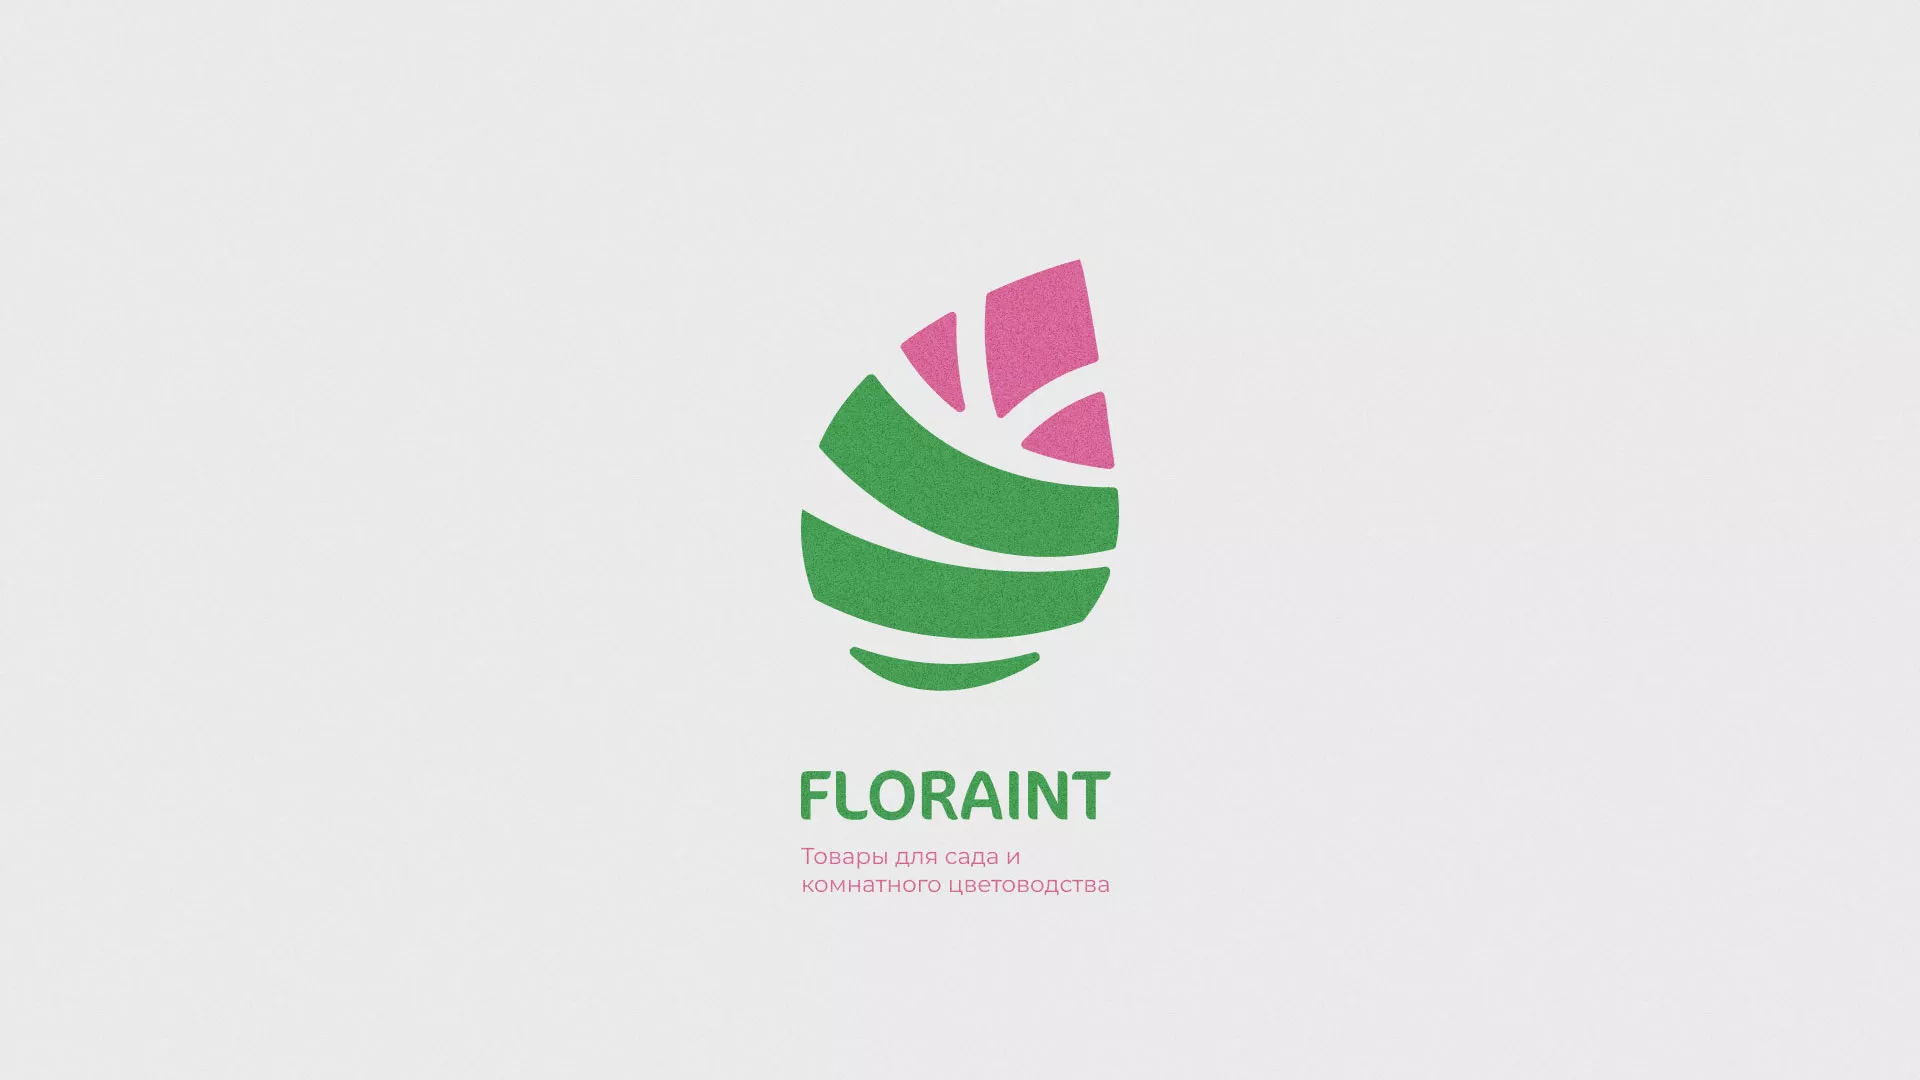 Разработка оформления профиля Instagram для магазина «Floraint» в Пушкине